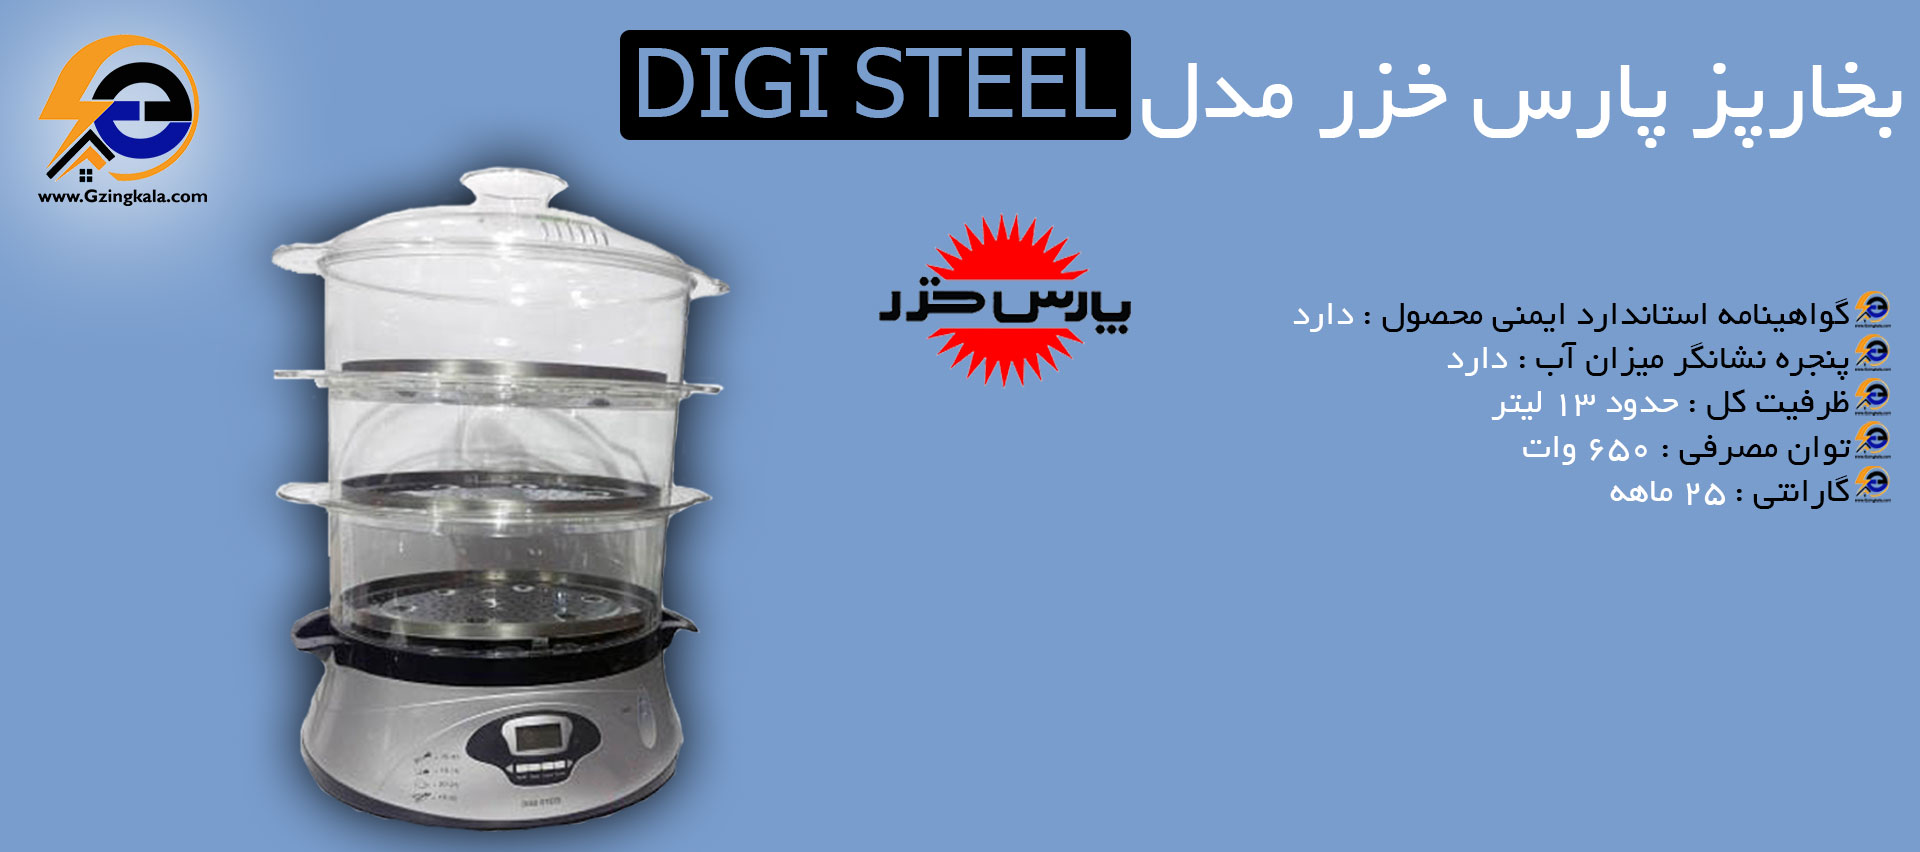 بخارپز پارس خزر مدل Digi Steel